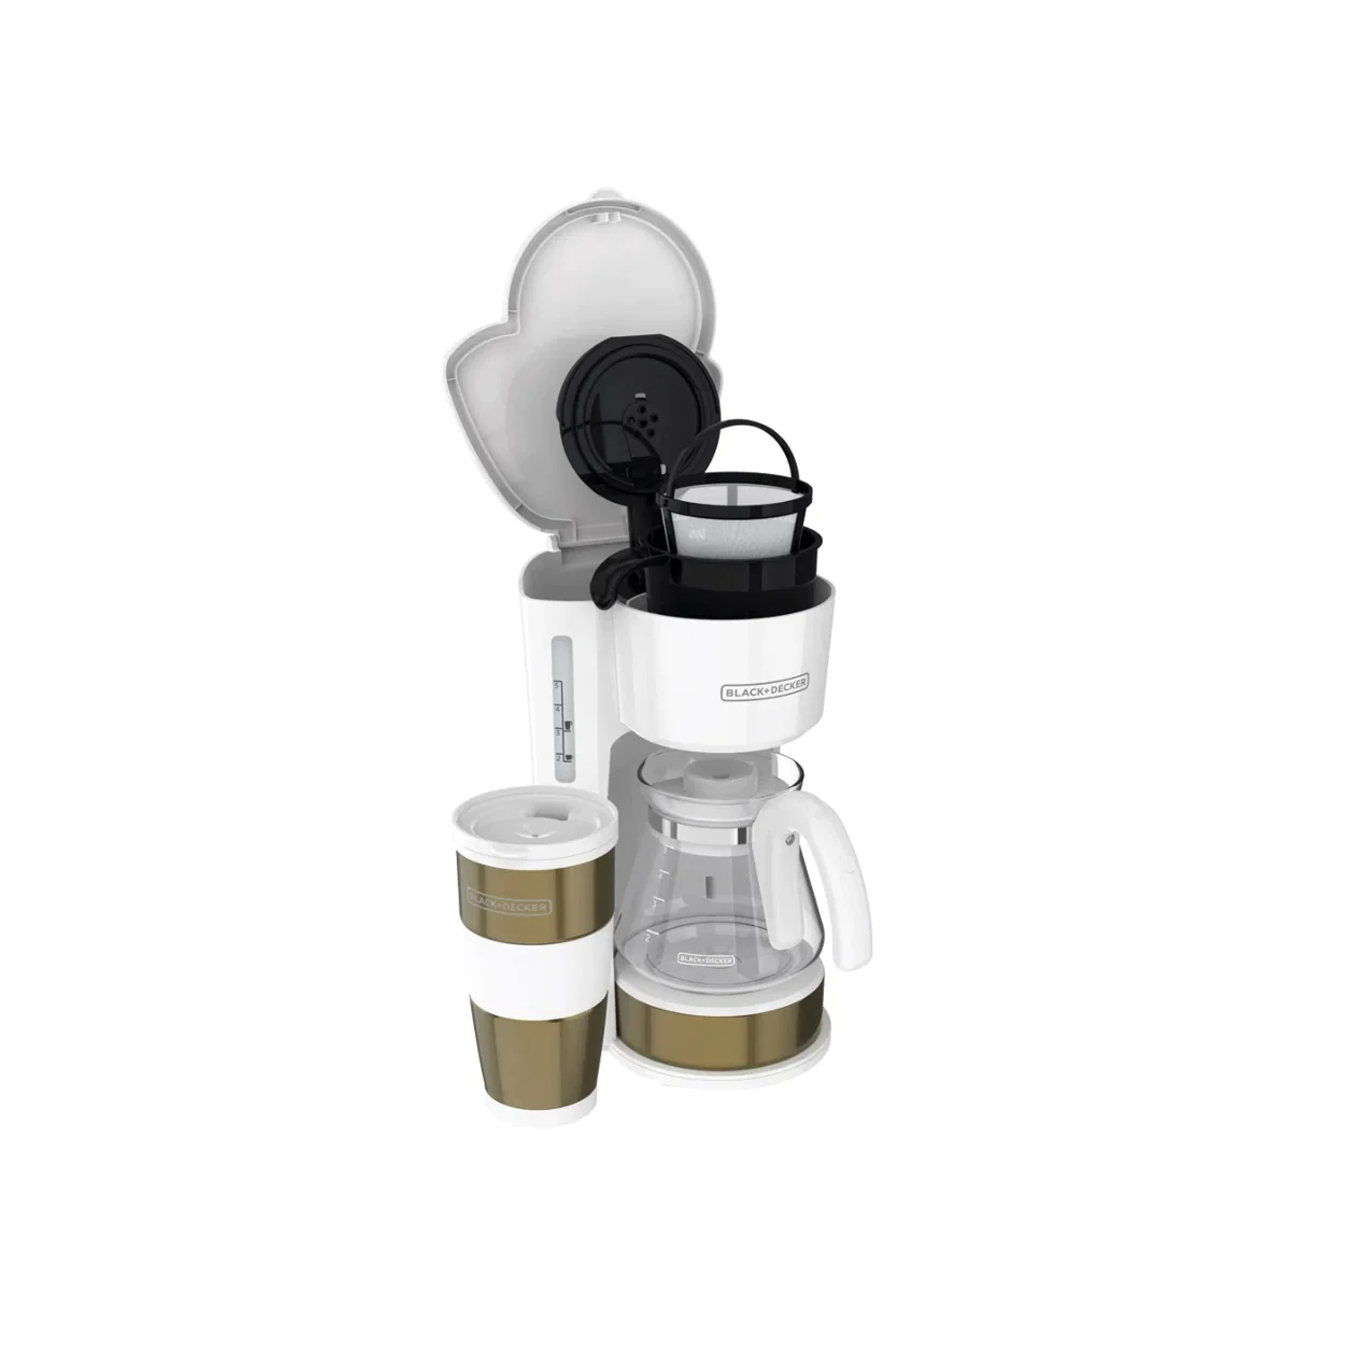 Coffee Maker de 4 tazas color blanco con dorado F-CM0755G Marca: Black + Decker